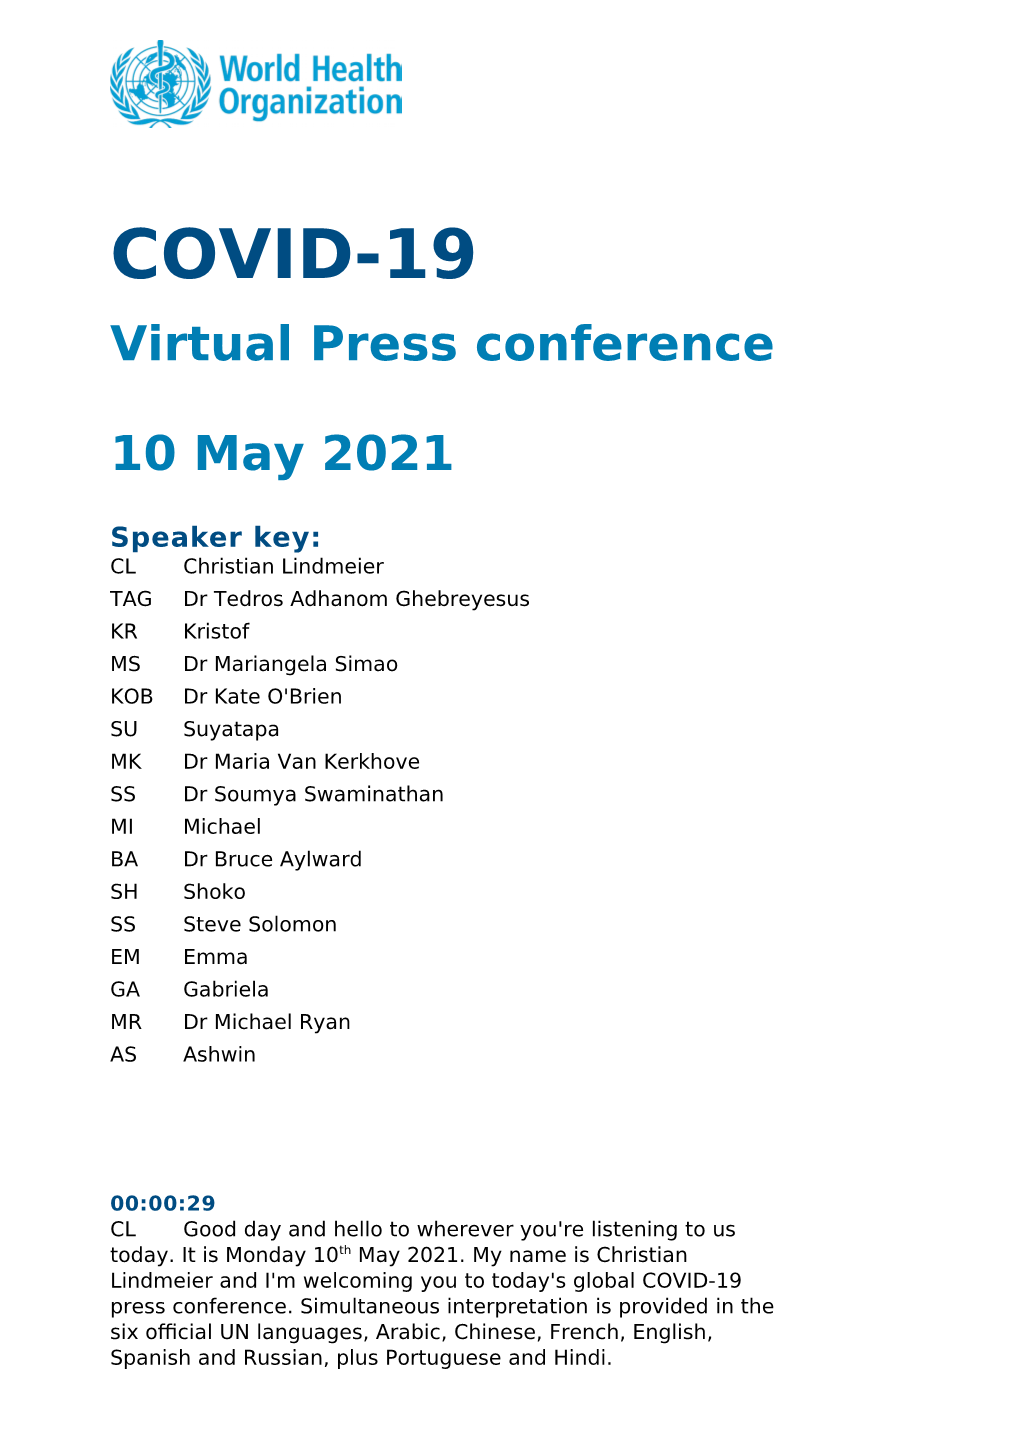 COVID-19 Virtual Press Conference